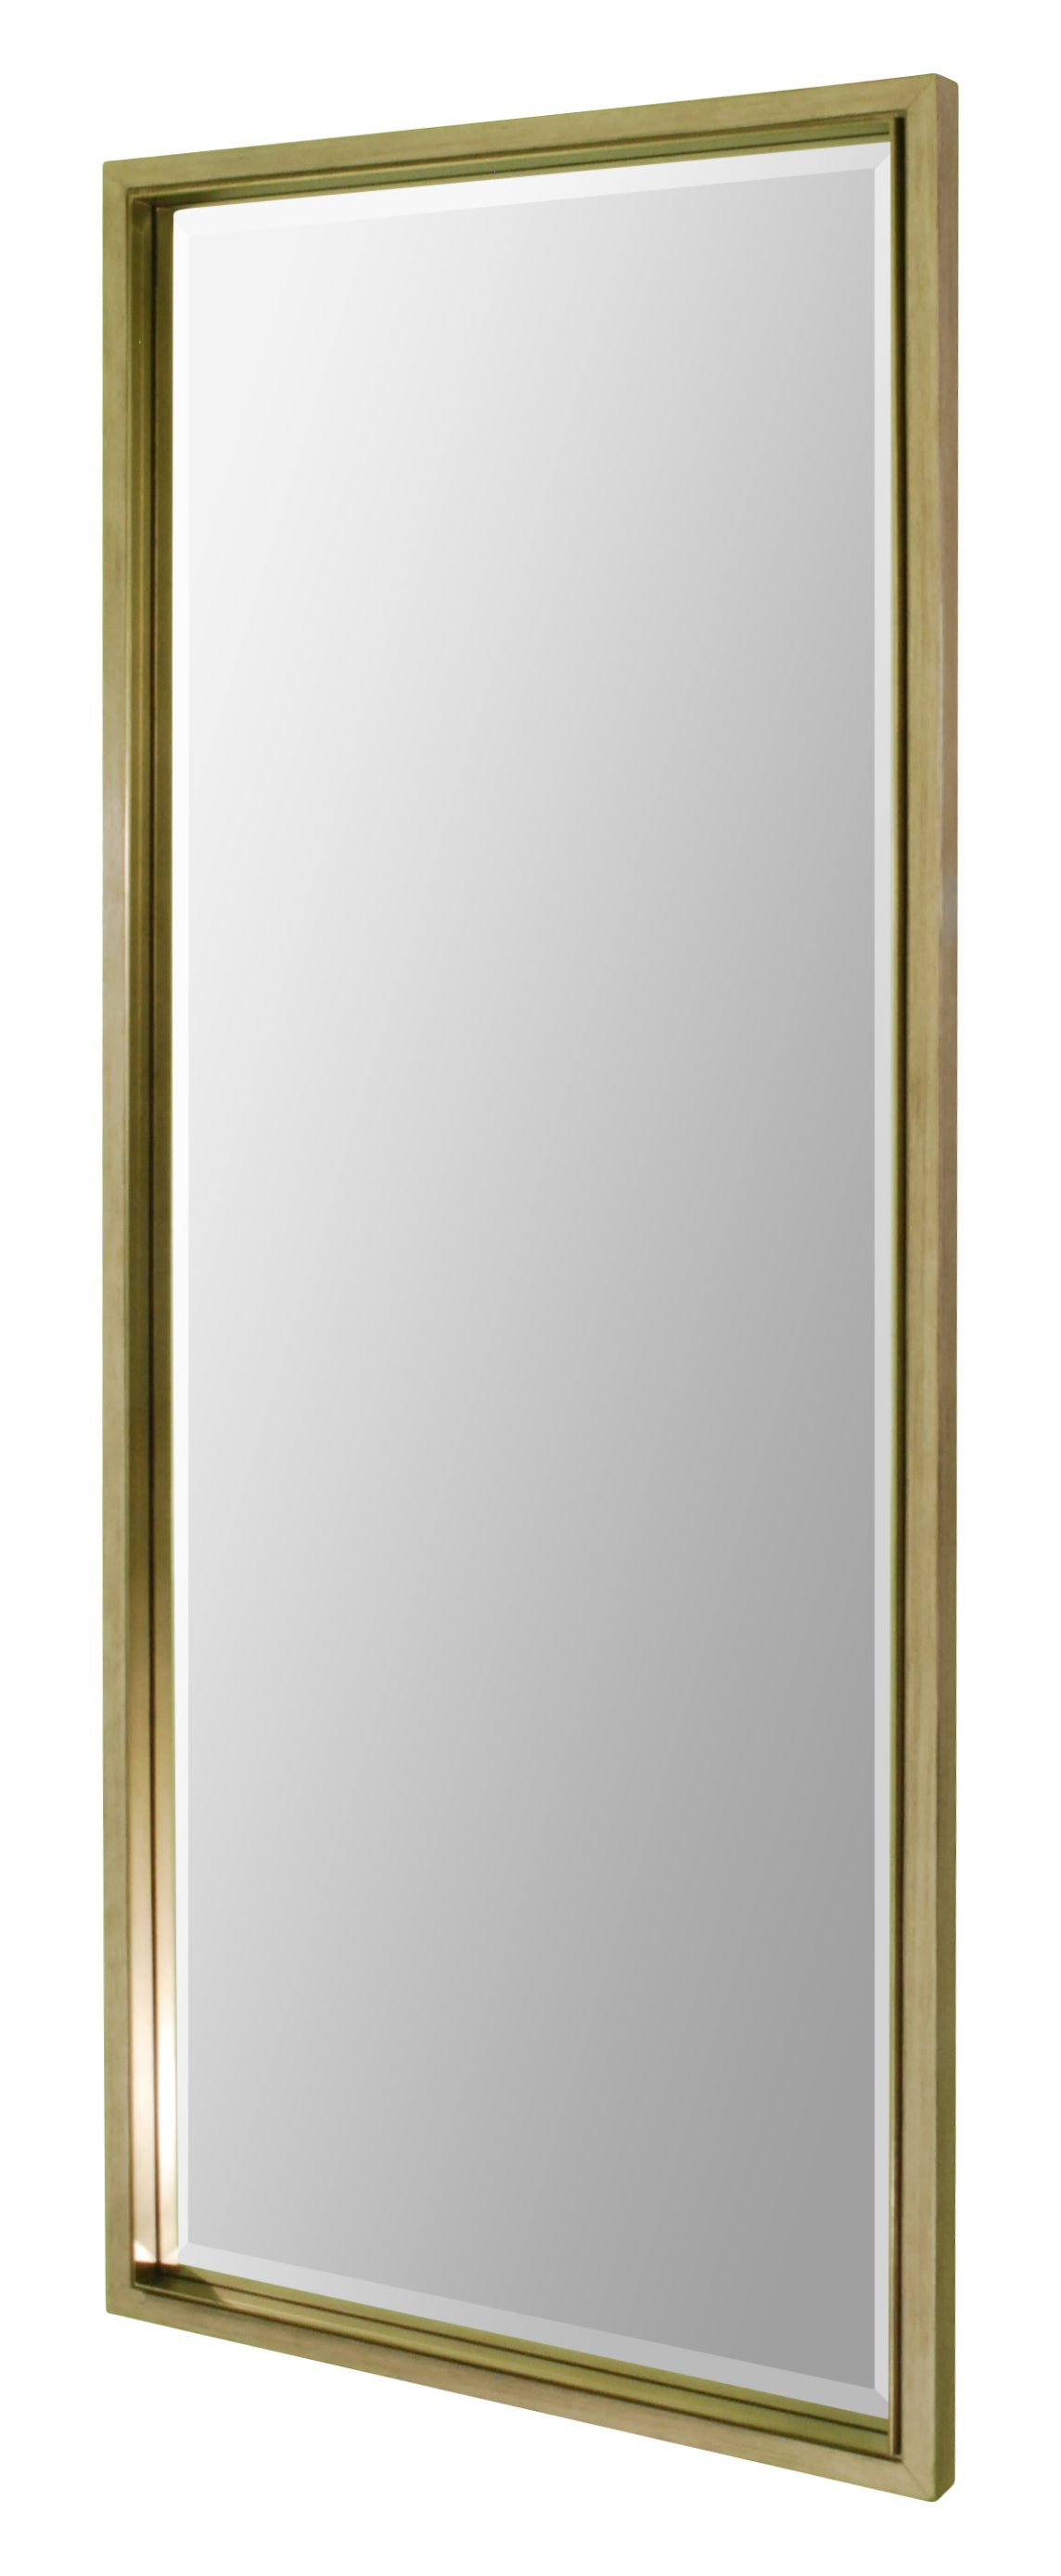 Full length mirror for hotel